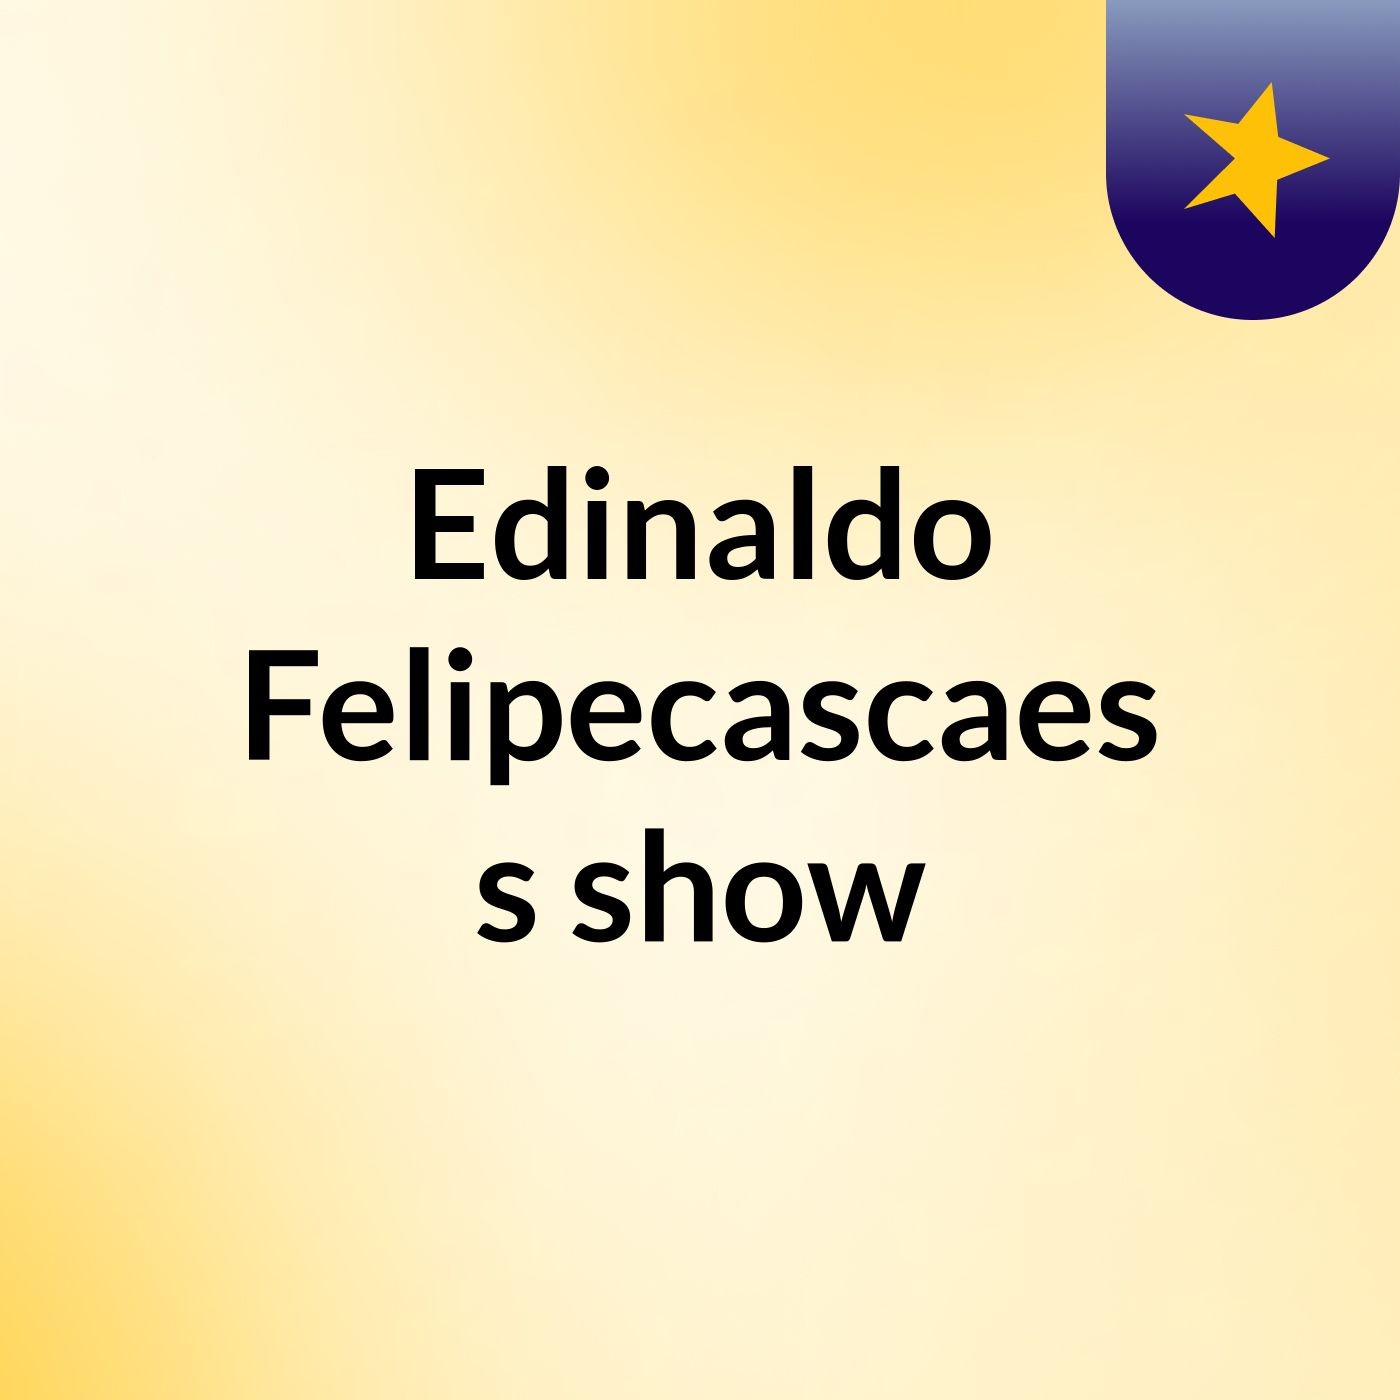 Edinaldo Felipecascaes's show